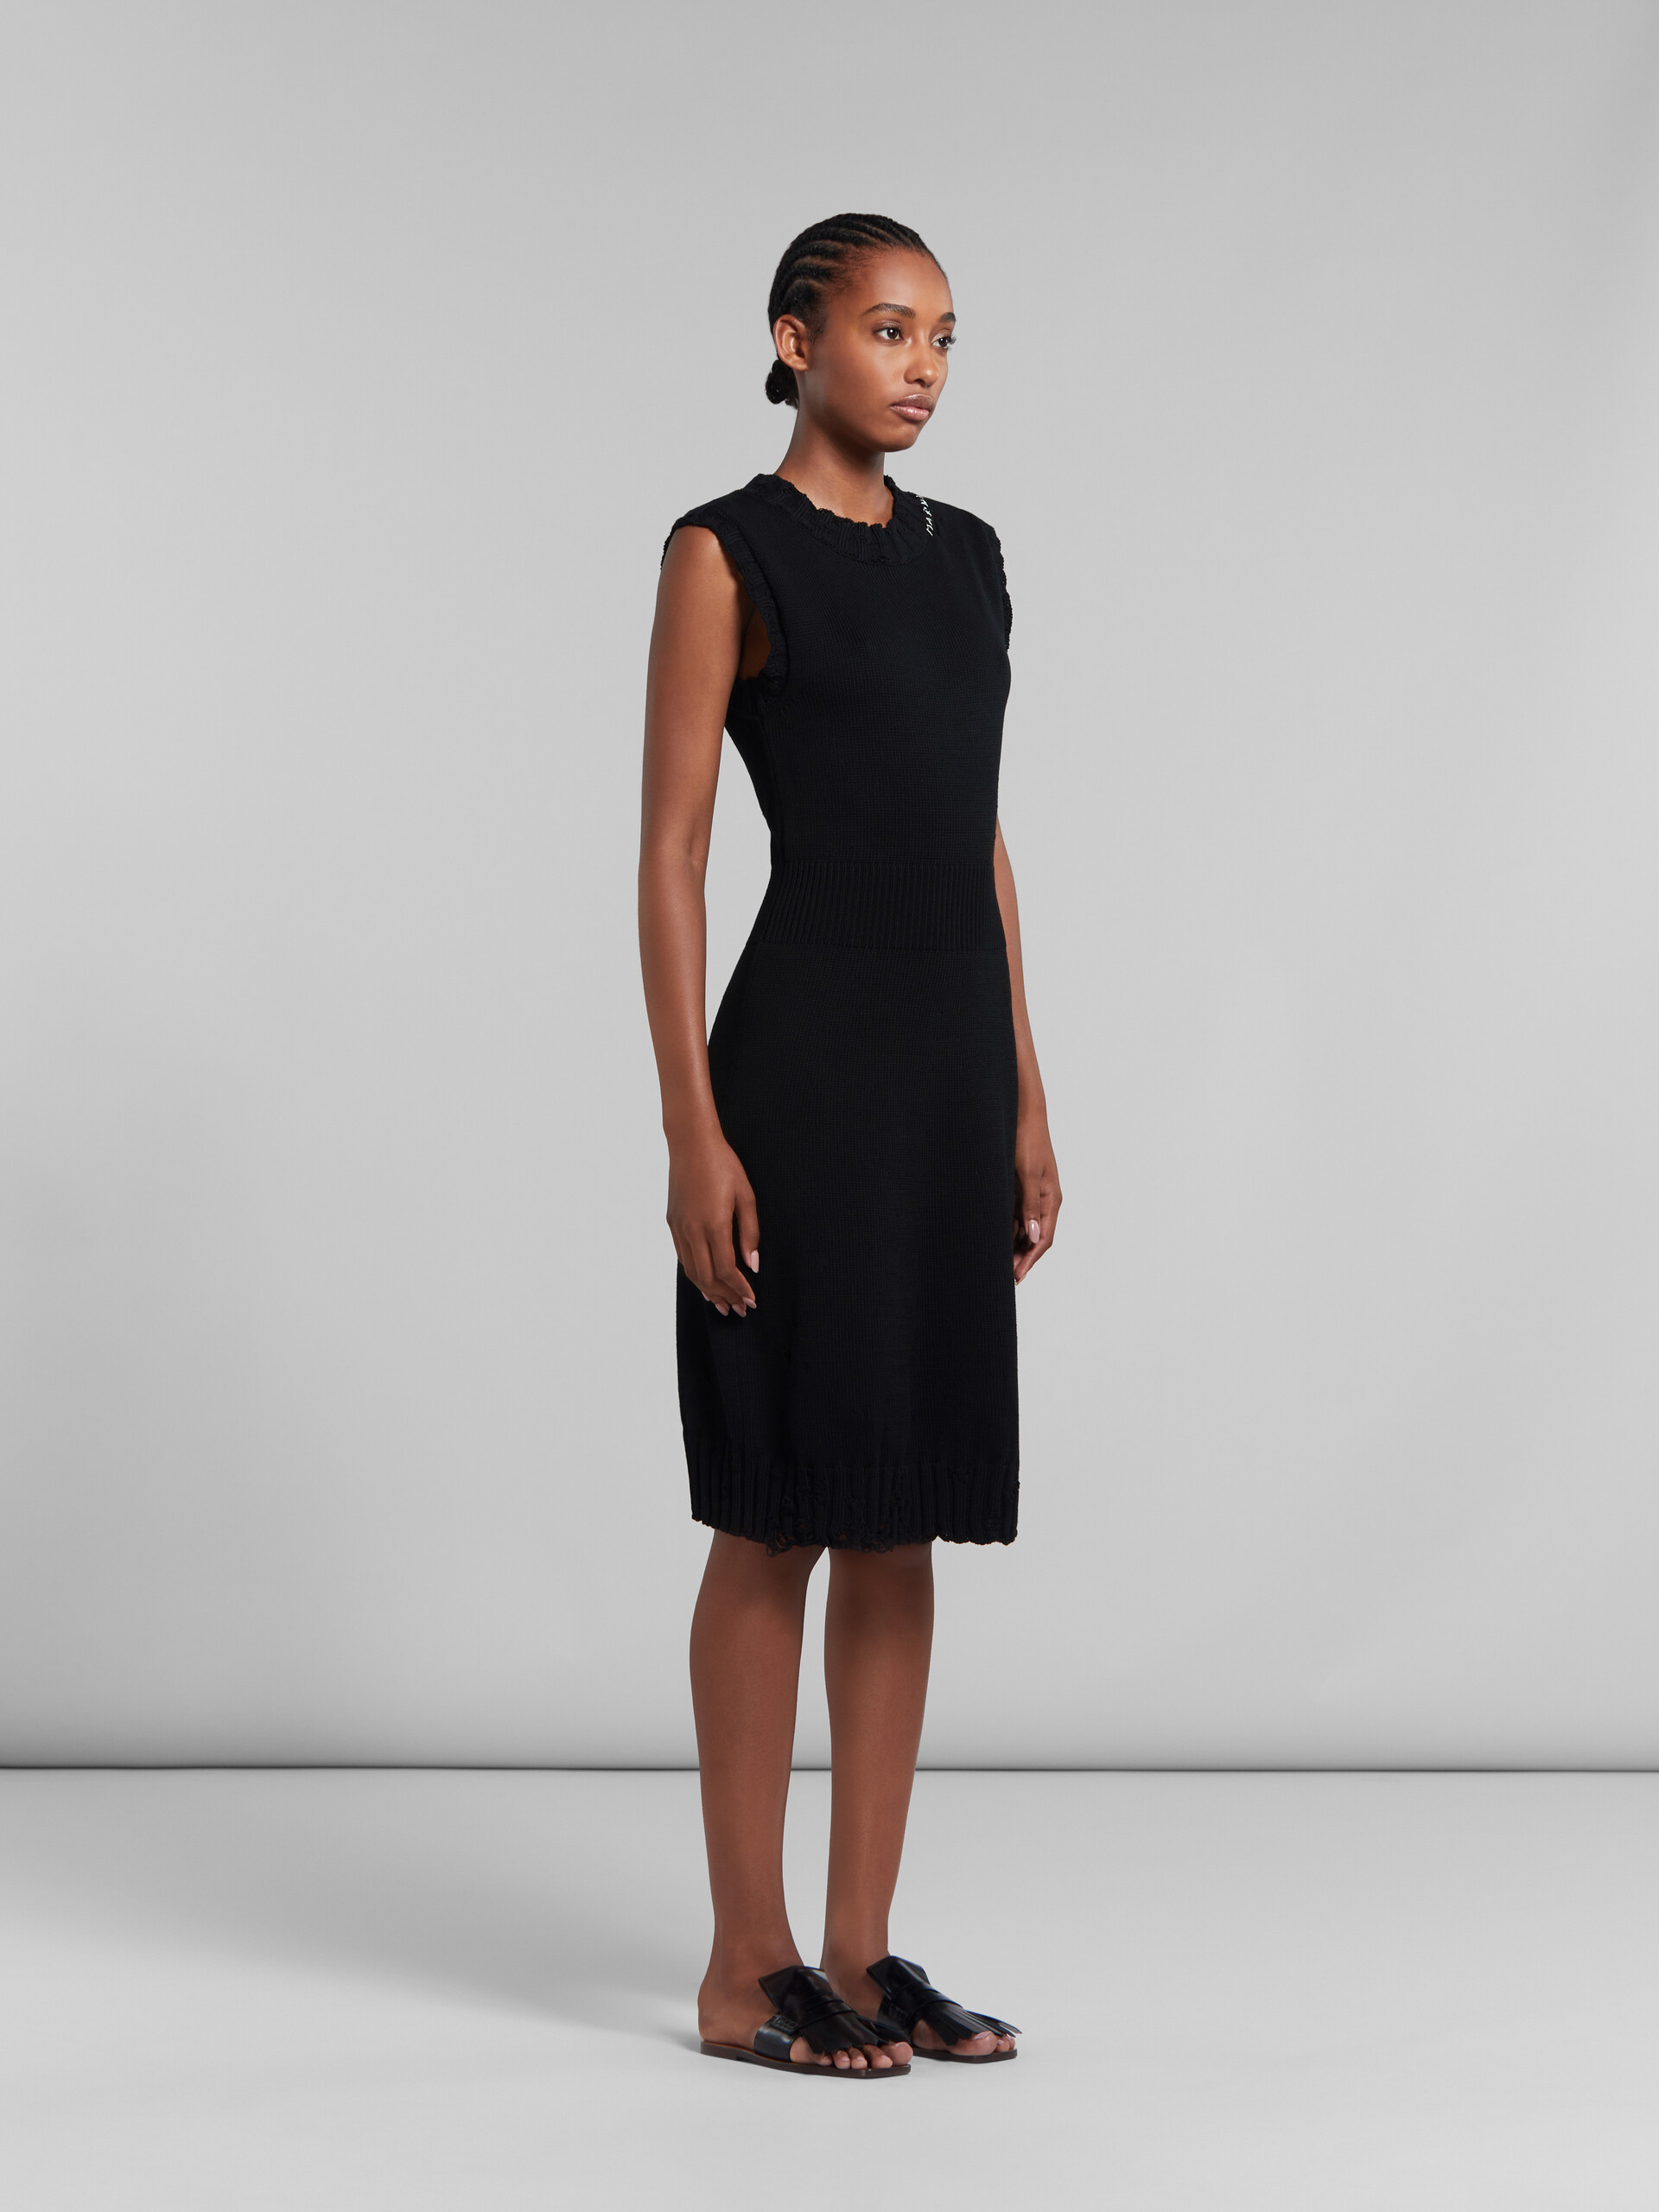 ブラック ディシュベルドコットン製ニットドレス - ドレス - Image 6